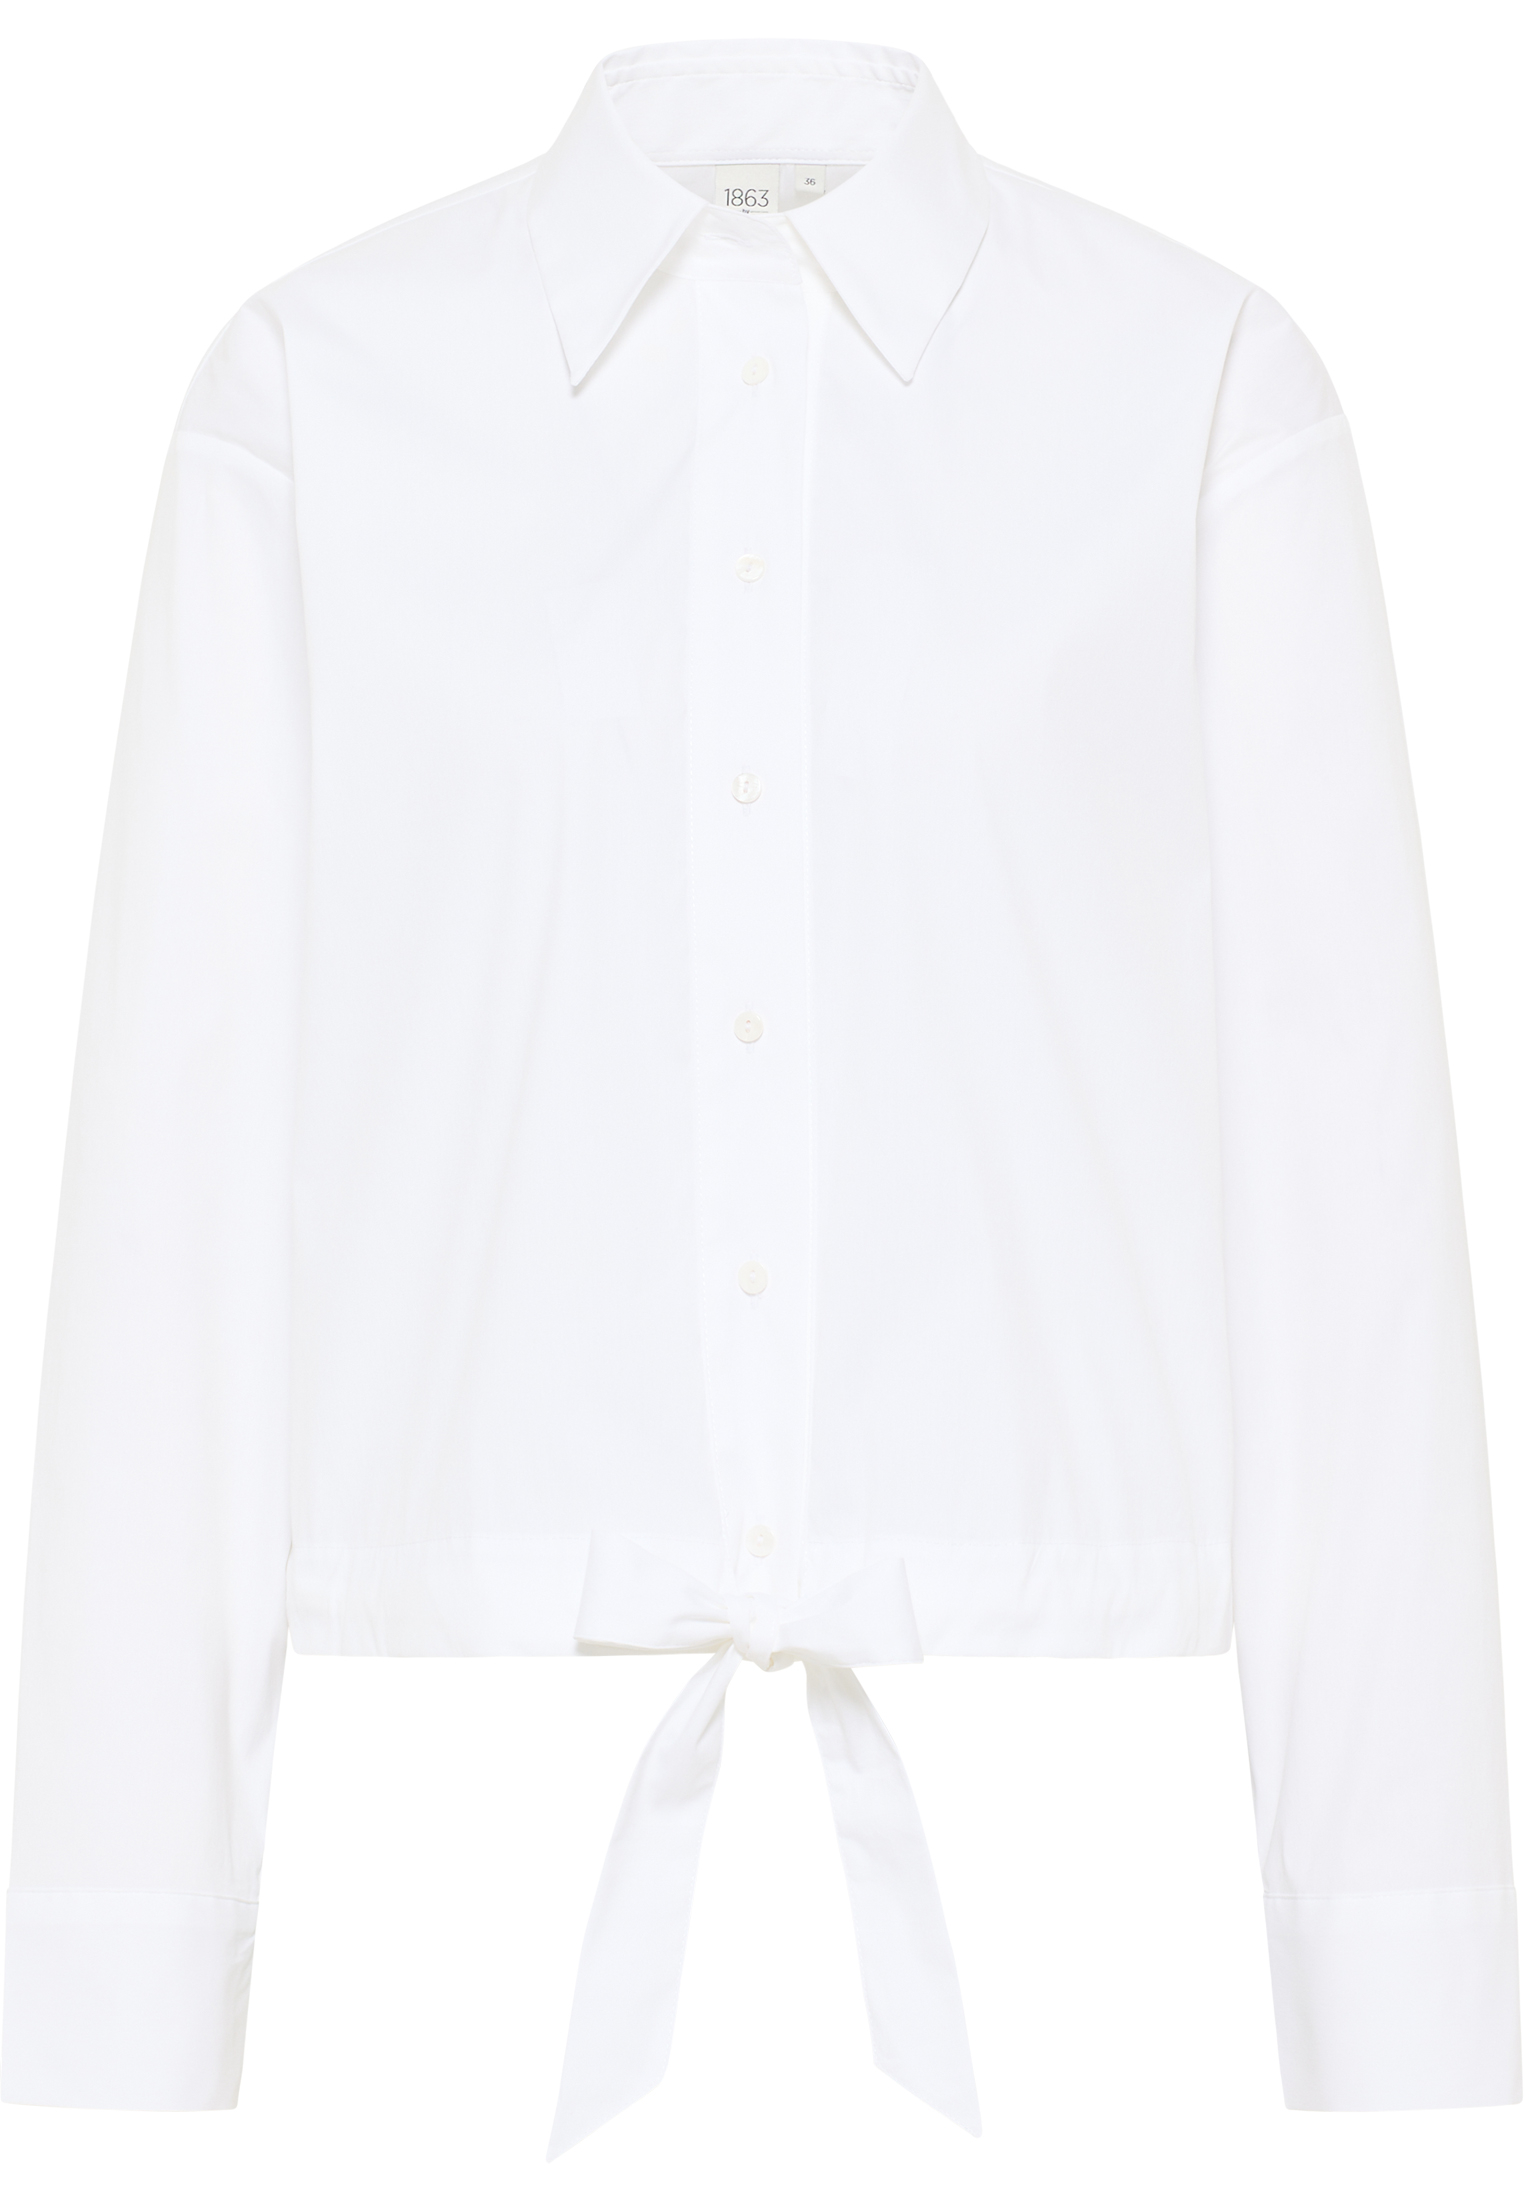 Langarm weiß Signature weiß | 34 | | 2BL04027-00-01-34-1/1 Shirt unifarben in Bluse |